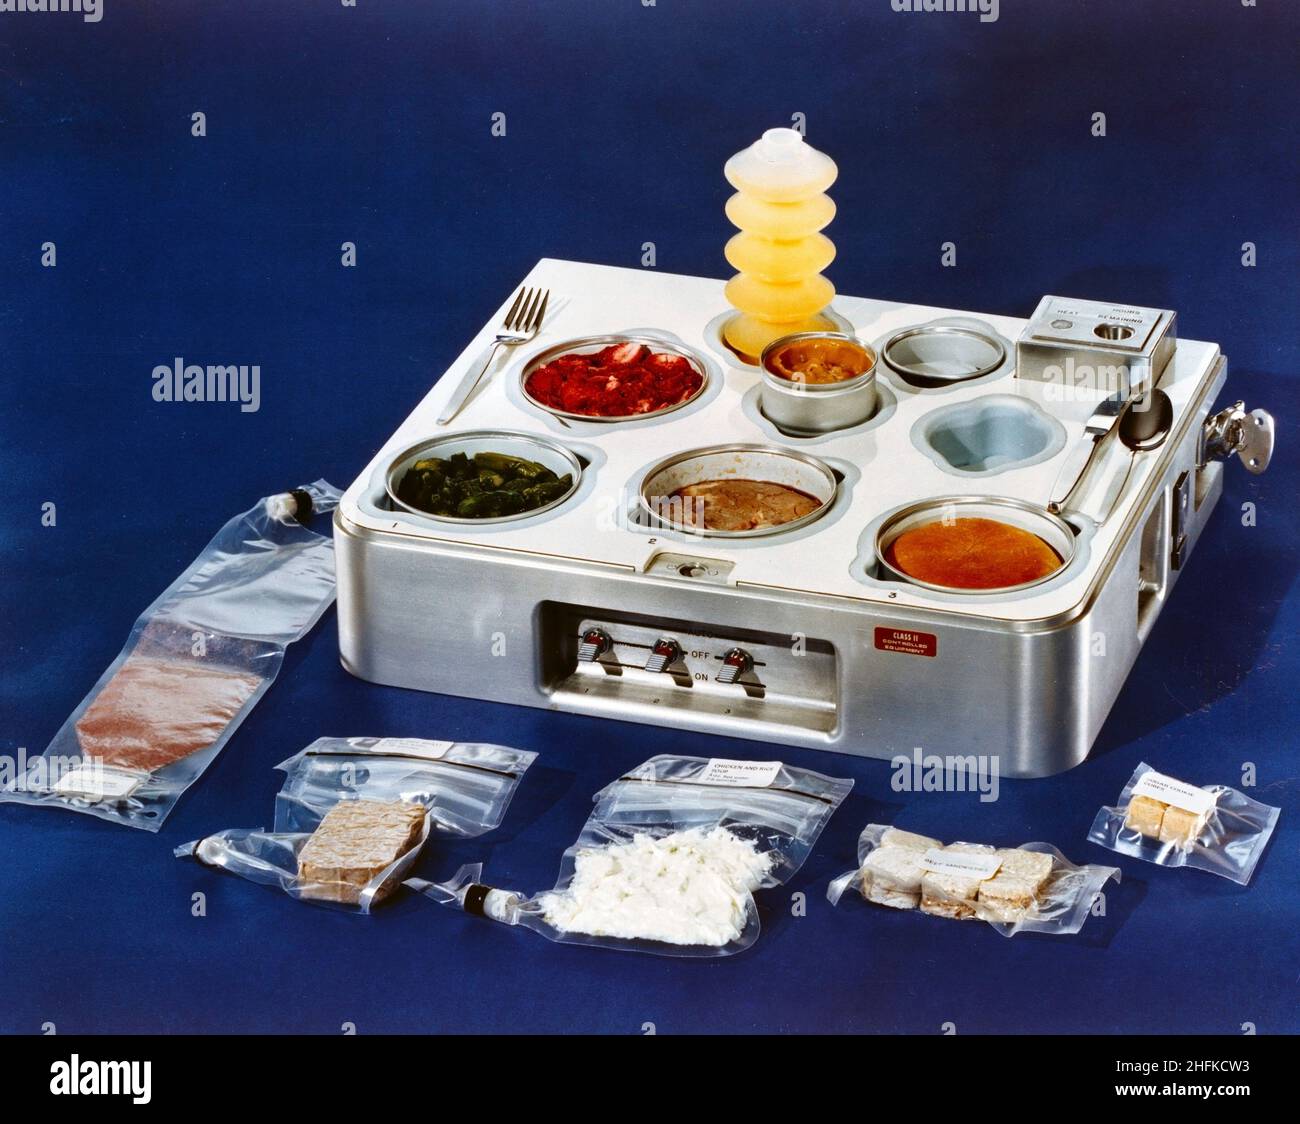 (1972) --- Eine Nahaufnahme eines Tabletts, das für das Skylab-Programm vorgesehen ist. Neben dem Tablett liegen mehrere Packungen mit Lebensmitteln aus dem Raum. Die Lebensmittel im Tablett sind verzehrfertig. Aus dem Tablett, beginnend von unten links: Traubengetränk, Rinderbraten, Huhn und Reis, Rindersandwiches und Zuckerplätzchenwürfel. Im Tablett, von hinten links: Orangengetränk, Erdbeeren, Spargel, Prime Rib, Essensrolle und Butterscotch-Pudding in der Mitte. Stockfoto